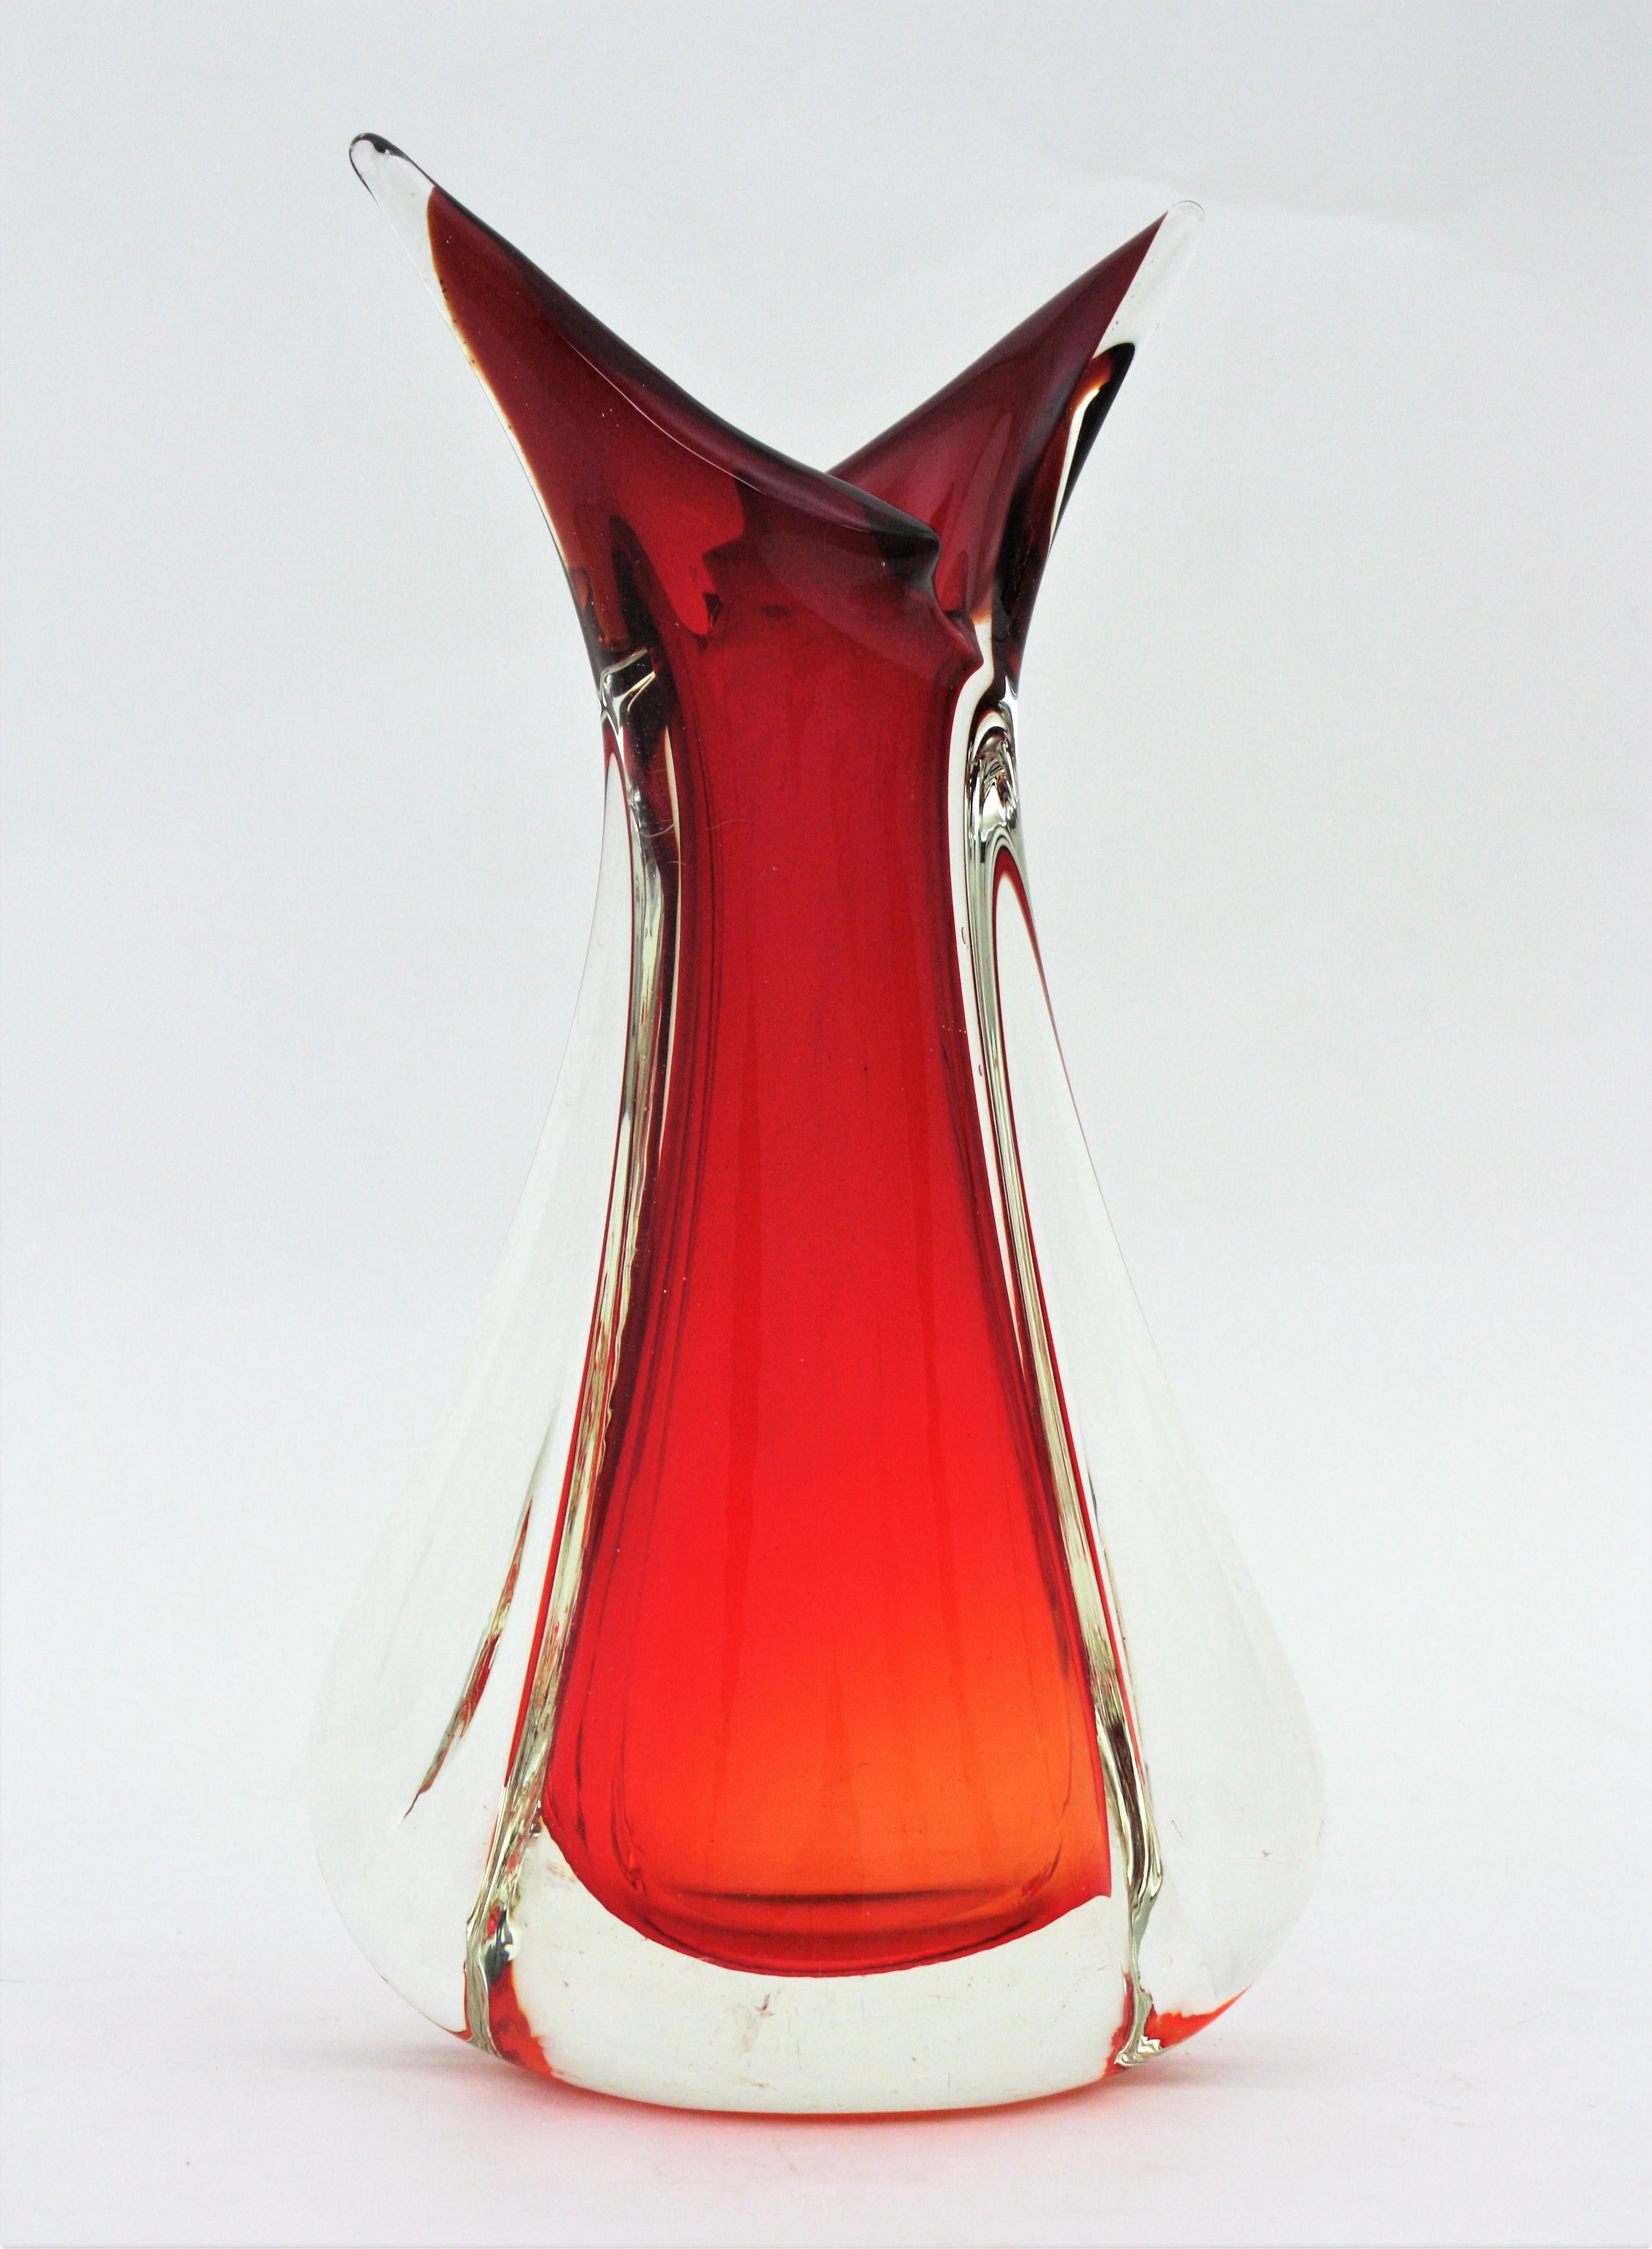 Flavio Poli Seguso Red Orange Sommerso Murano Art Glass Vase In Good Condition For Sale In Barcelona, ES